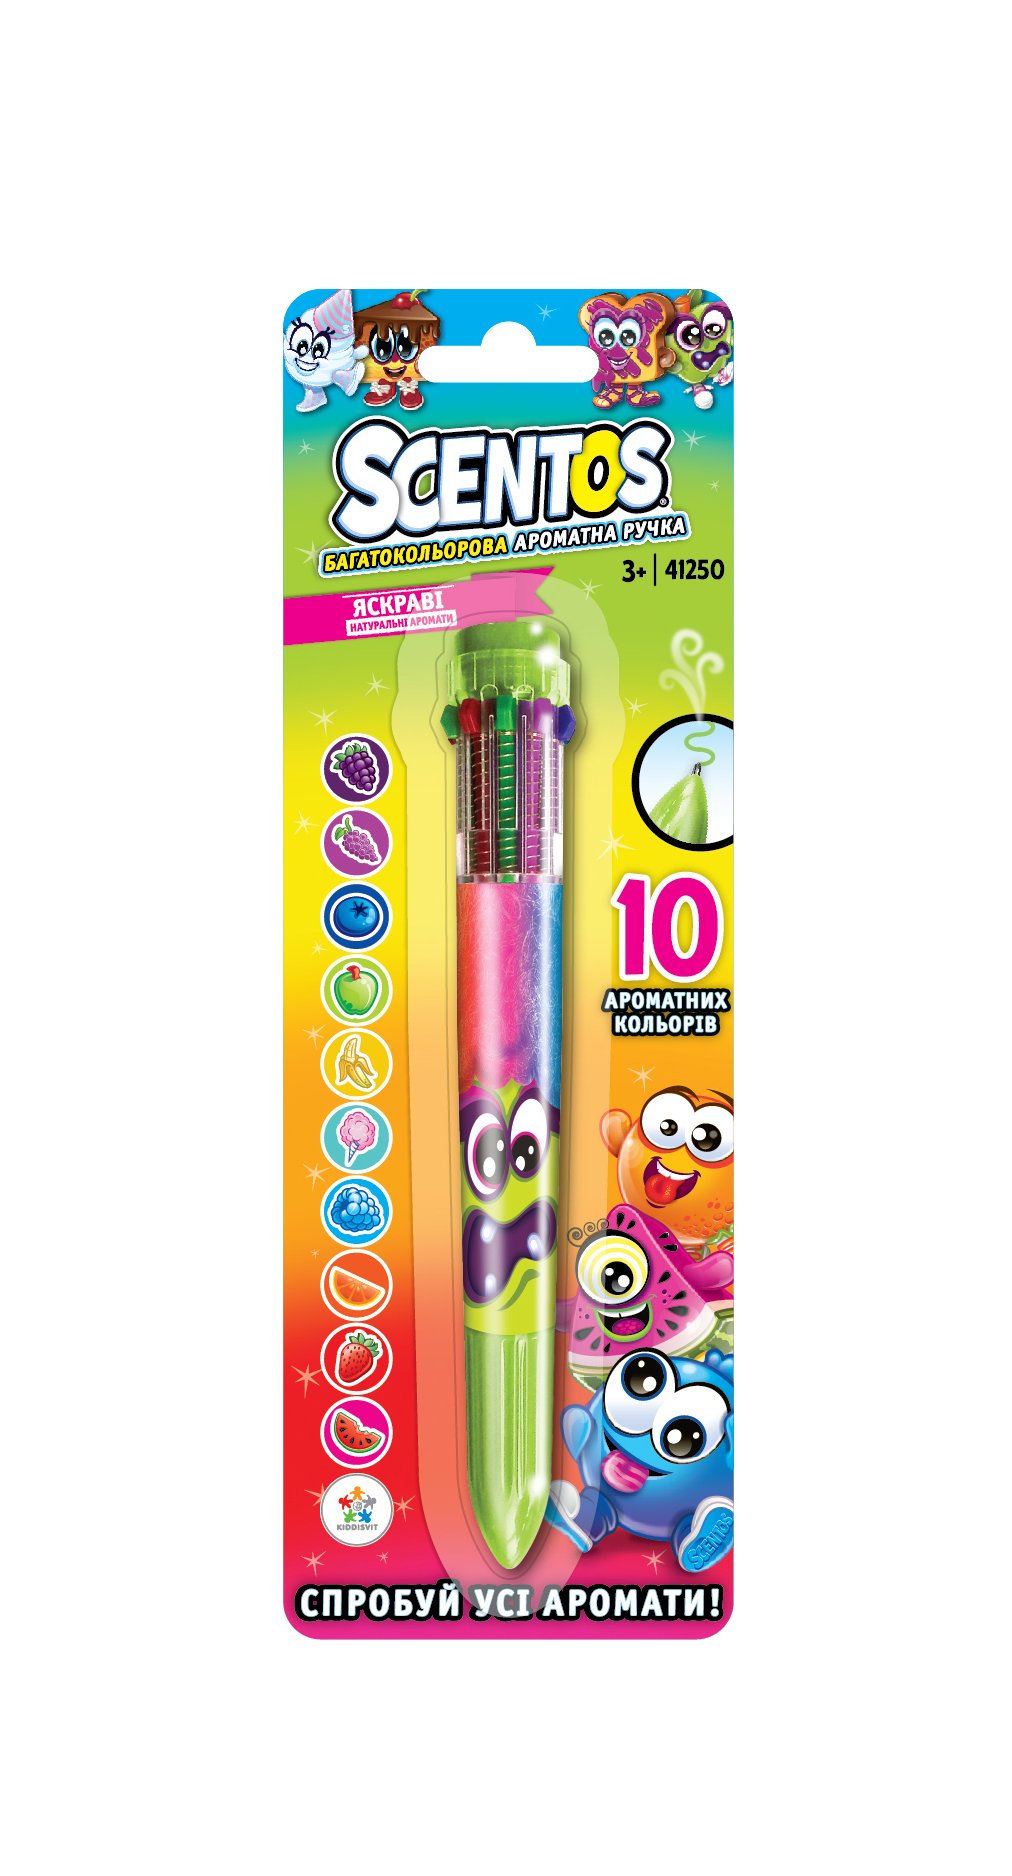 Багатобарвна ароматна кулькова ручка Scentos Чарівний настрій, 10 кольорів, зелений (41250) - фото 1